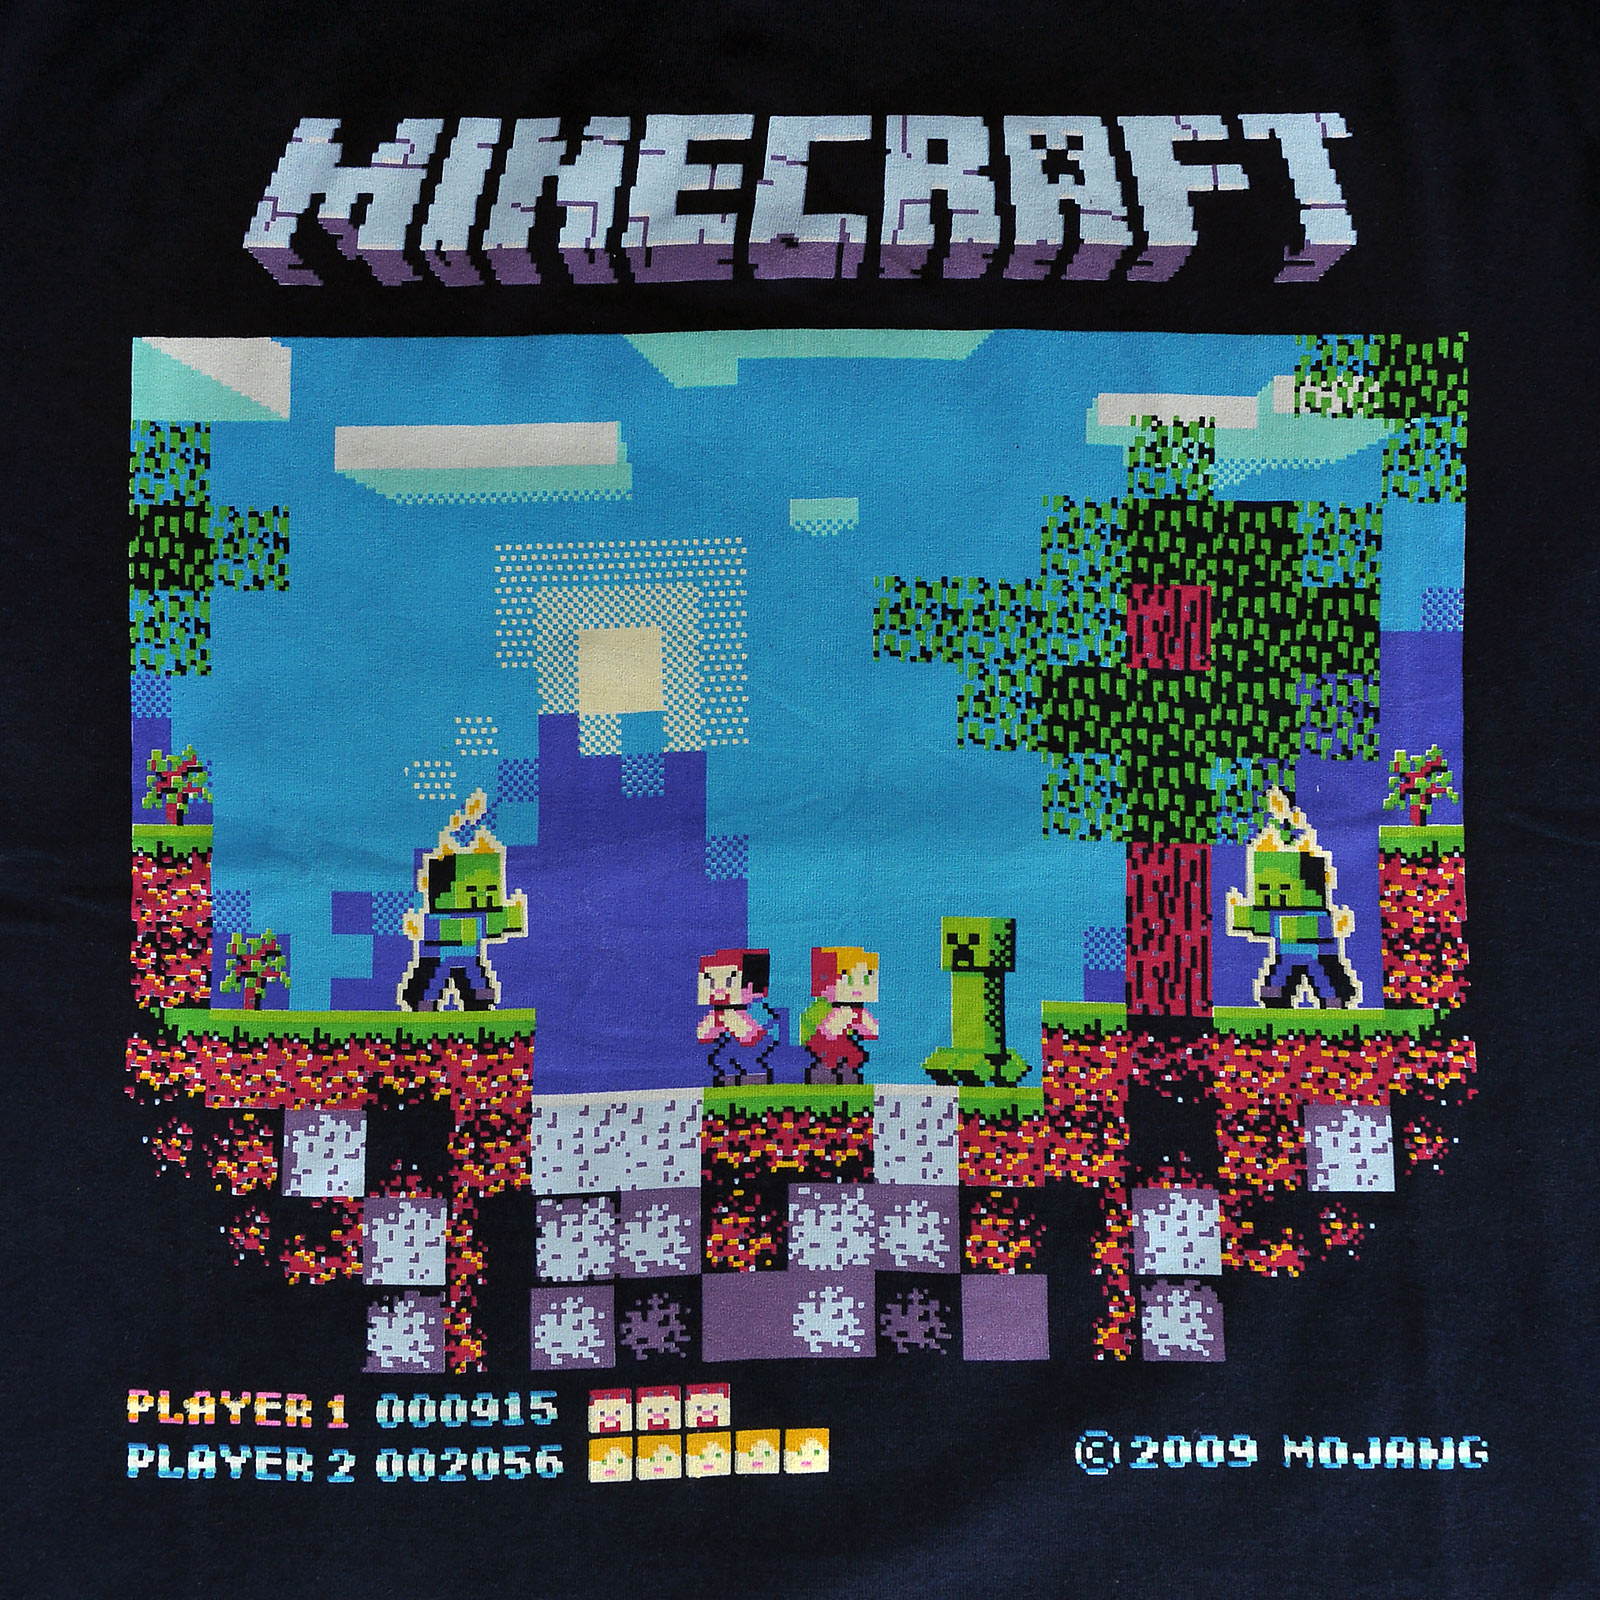 Minecraft - Brawler Retro T-Shirt Kinderen blauw